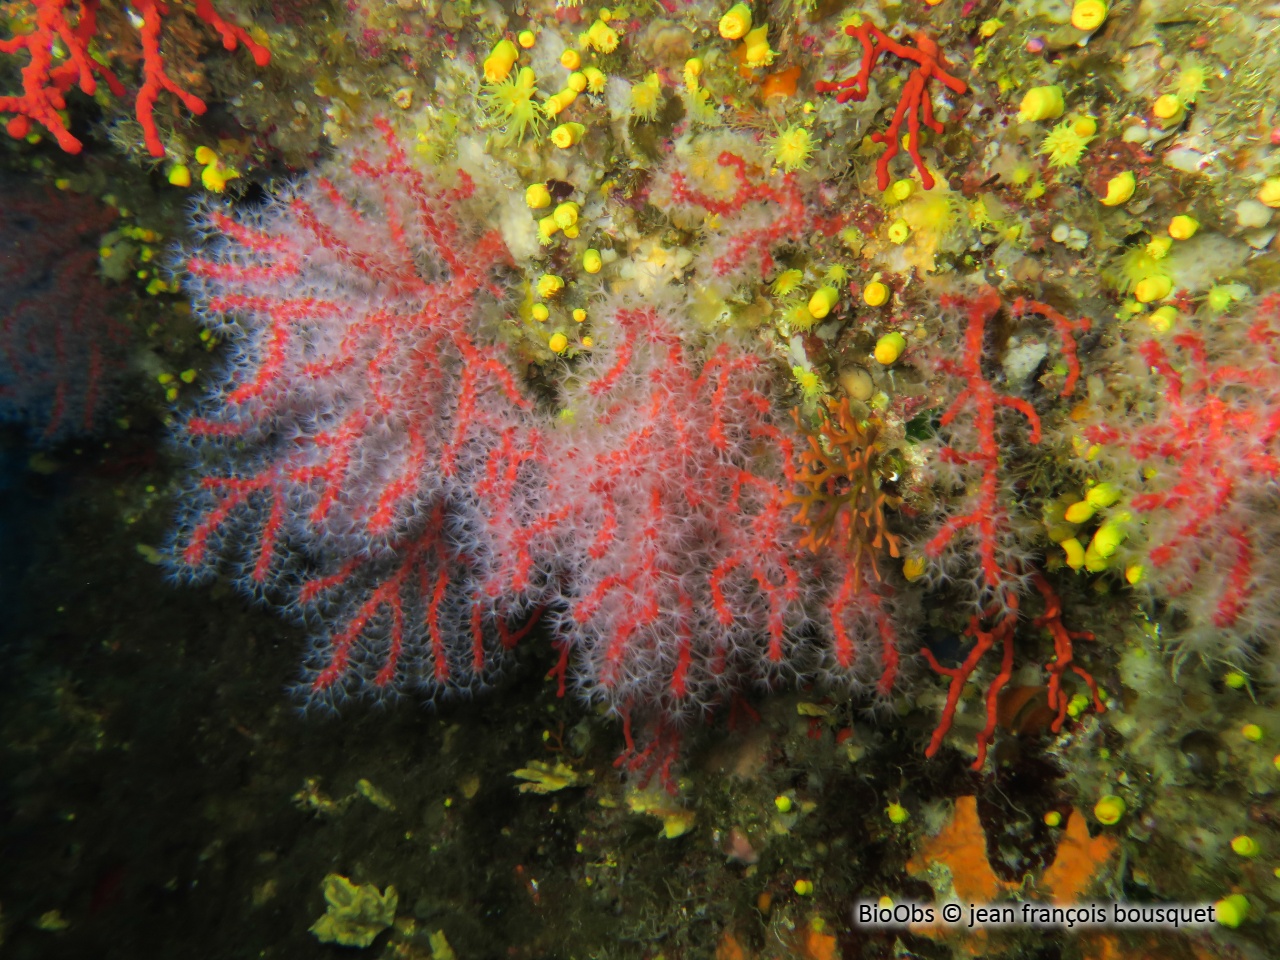 Corail rouge - Corallium rubrum - jean françois bousquet - BioObs